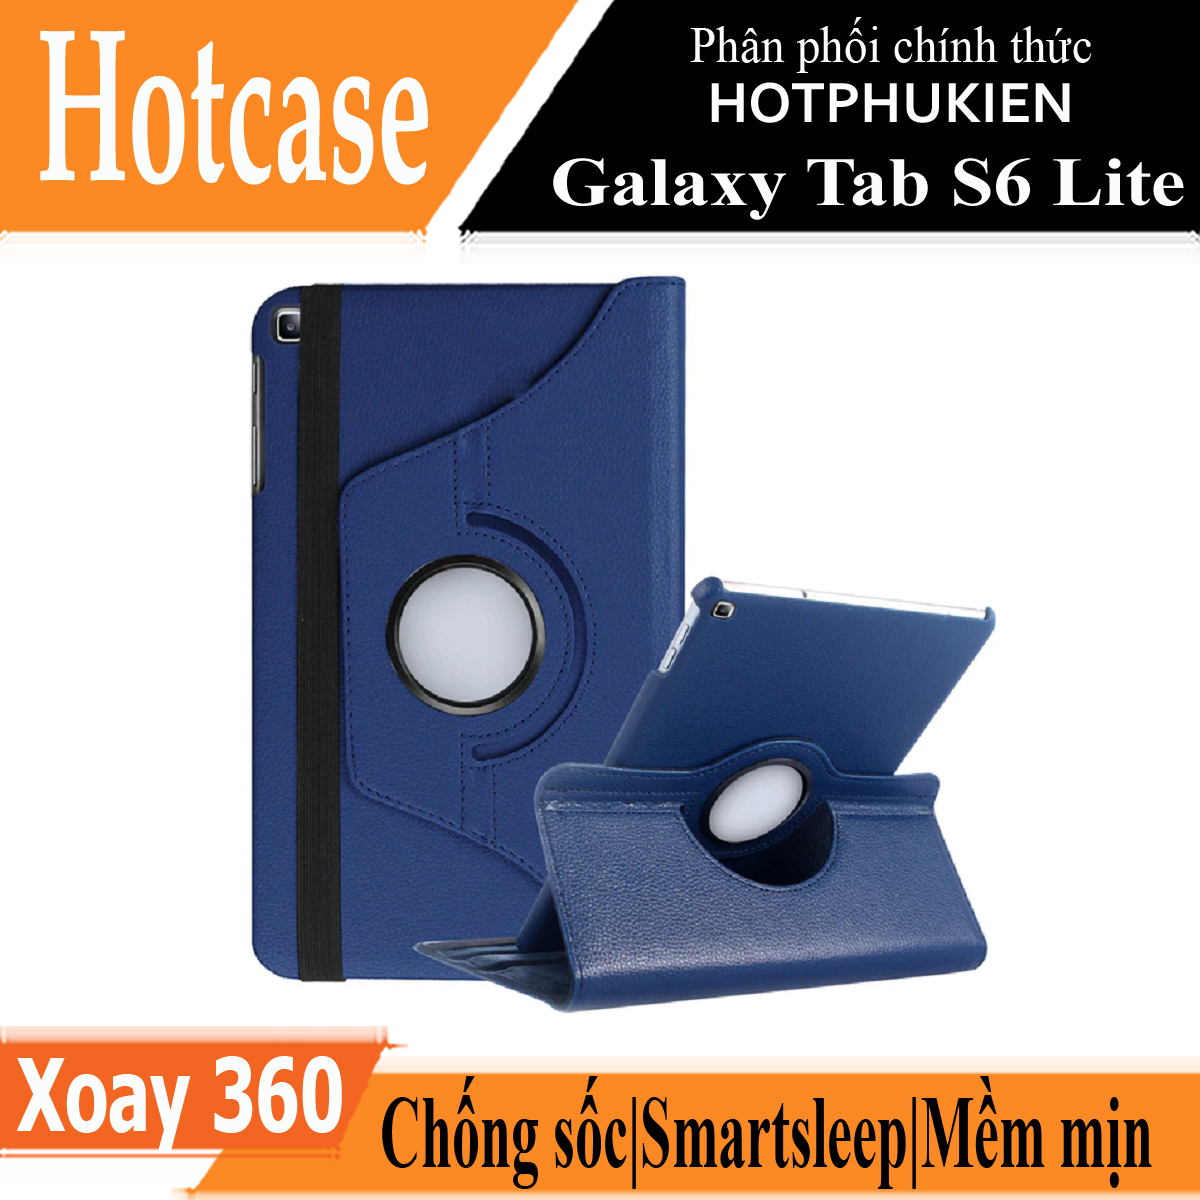 Case bao da Galaxy Tab S6 Lite 2022 / 2020 10.4 inch (SM - P615 / P610) xoay 360 độ chống sốc hiệu HOTCASE (thiết kế siêu mỏng, gập nhiều tư thế, tản nhiệt tốt) - hàng nhập khẩu